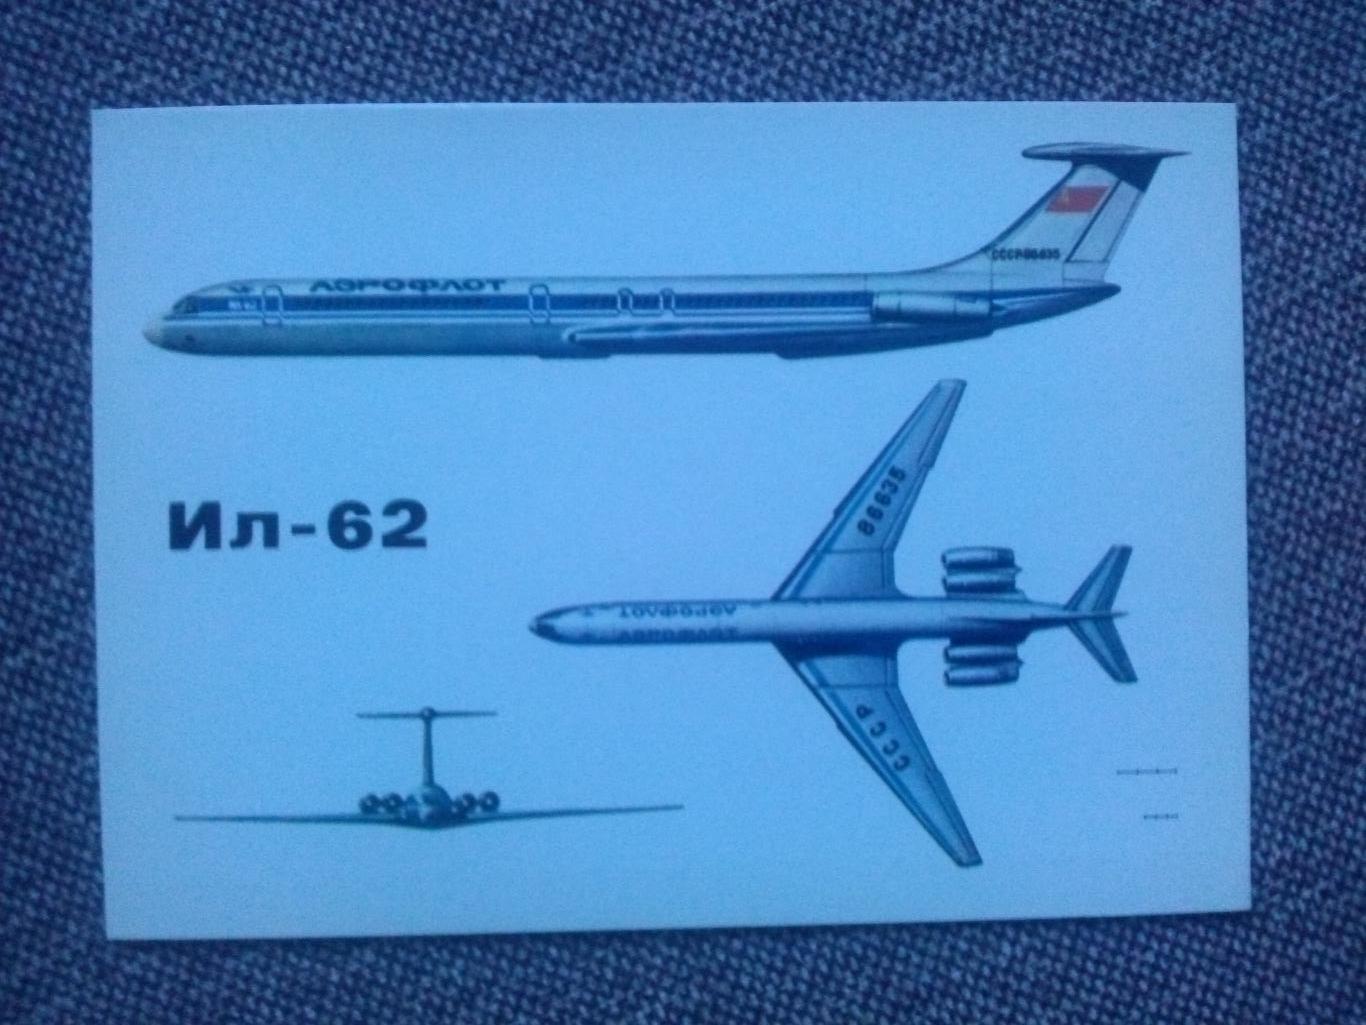 Авиация : самолет ИЛ - 62 ( транспорт ) 1989 г. Аэрофлот